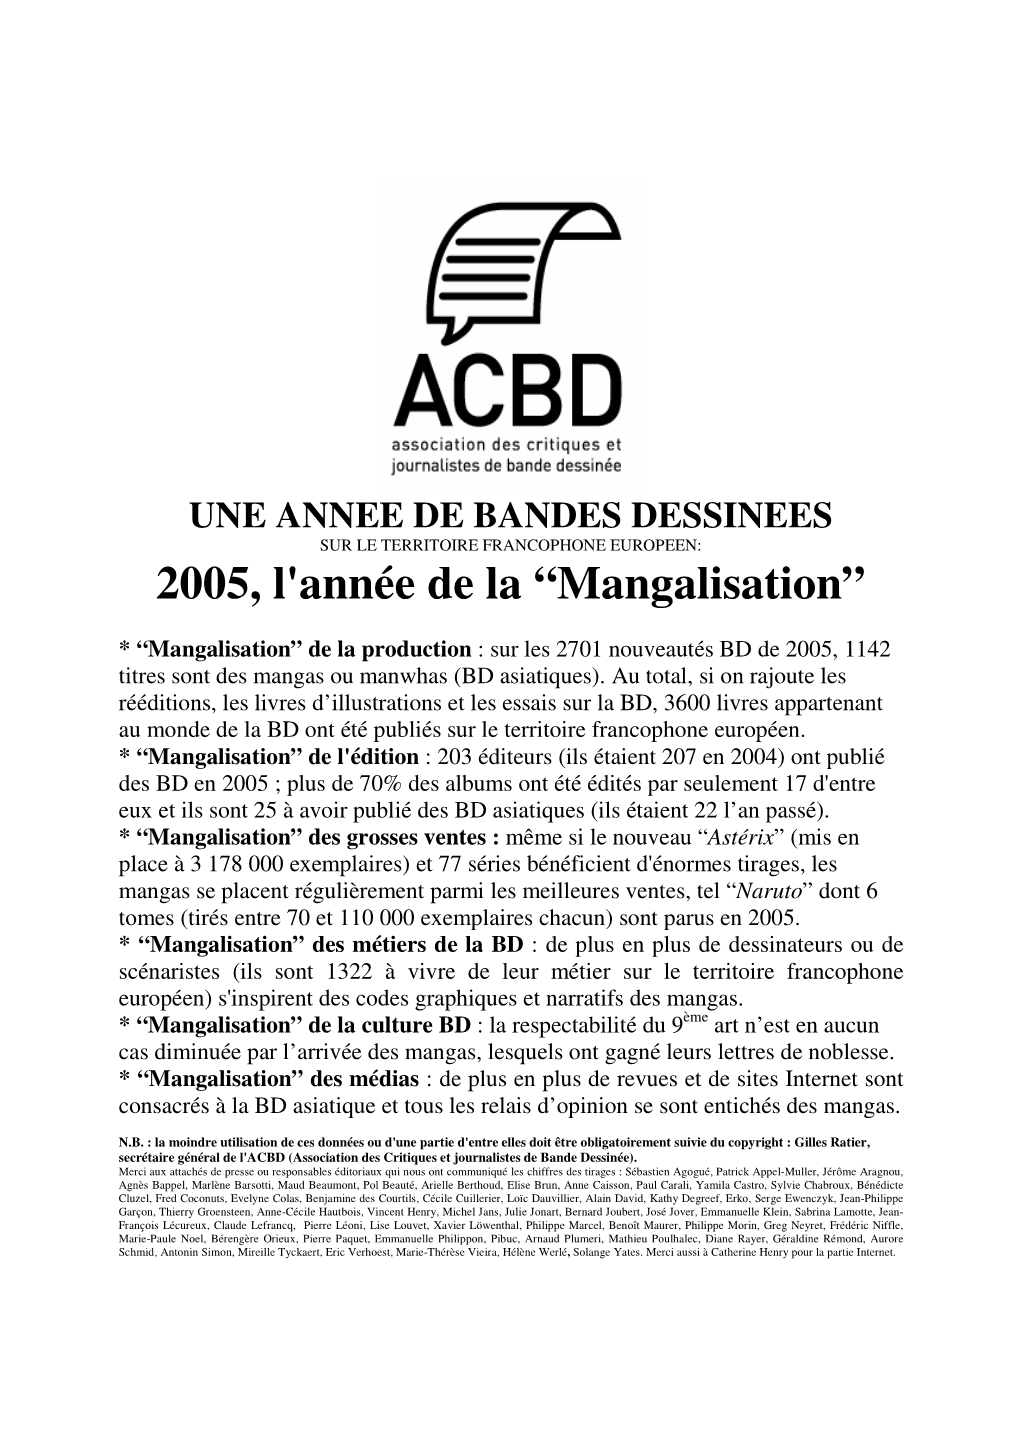 2005, L'année De La “Mangalisation”